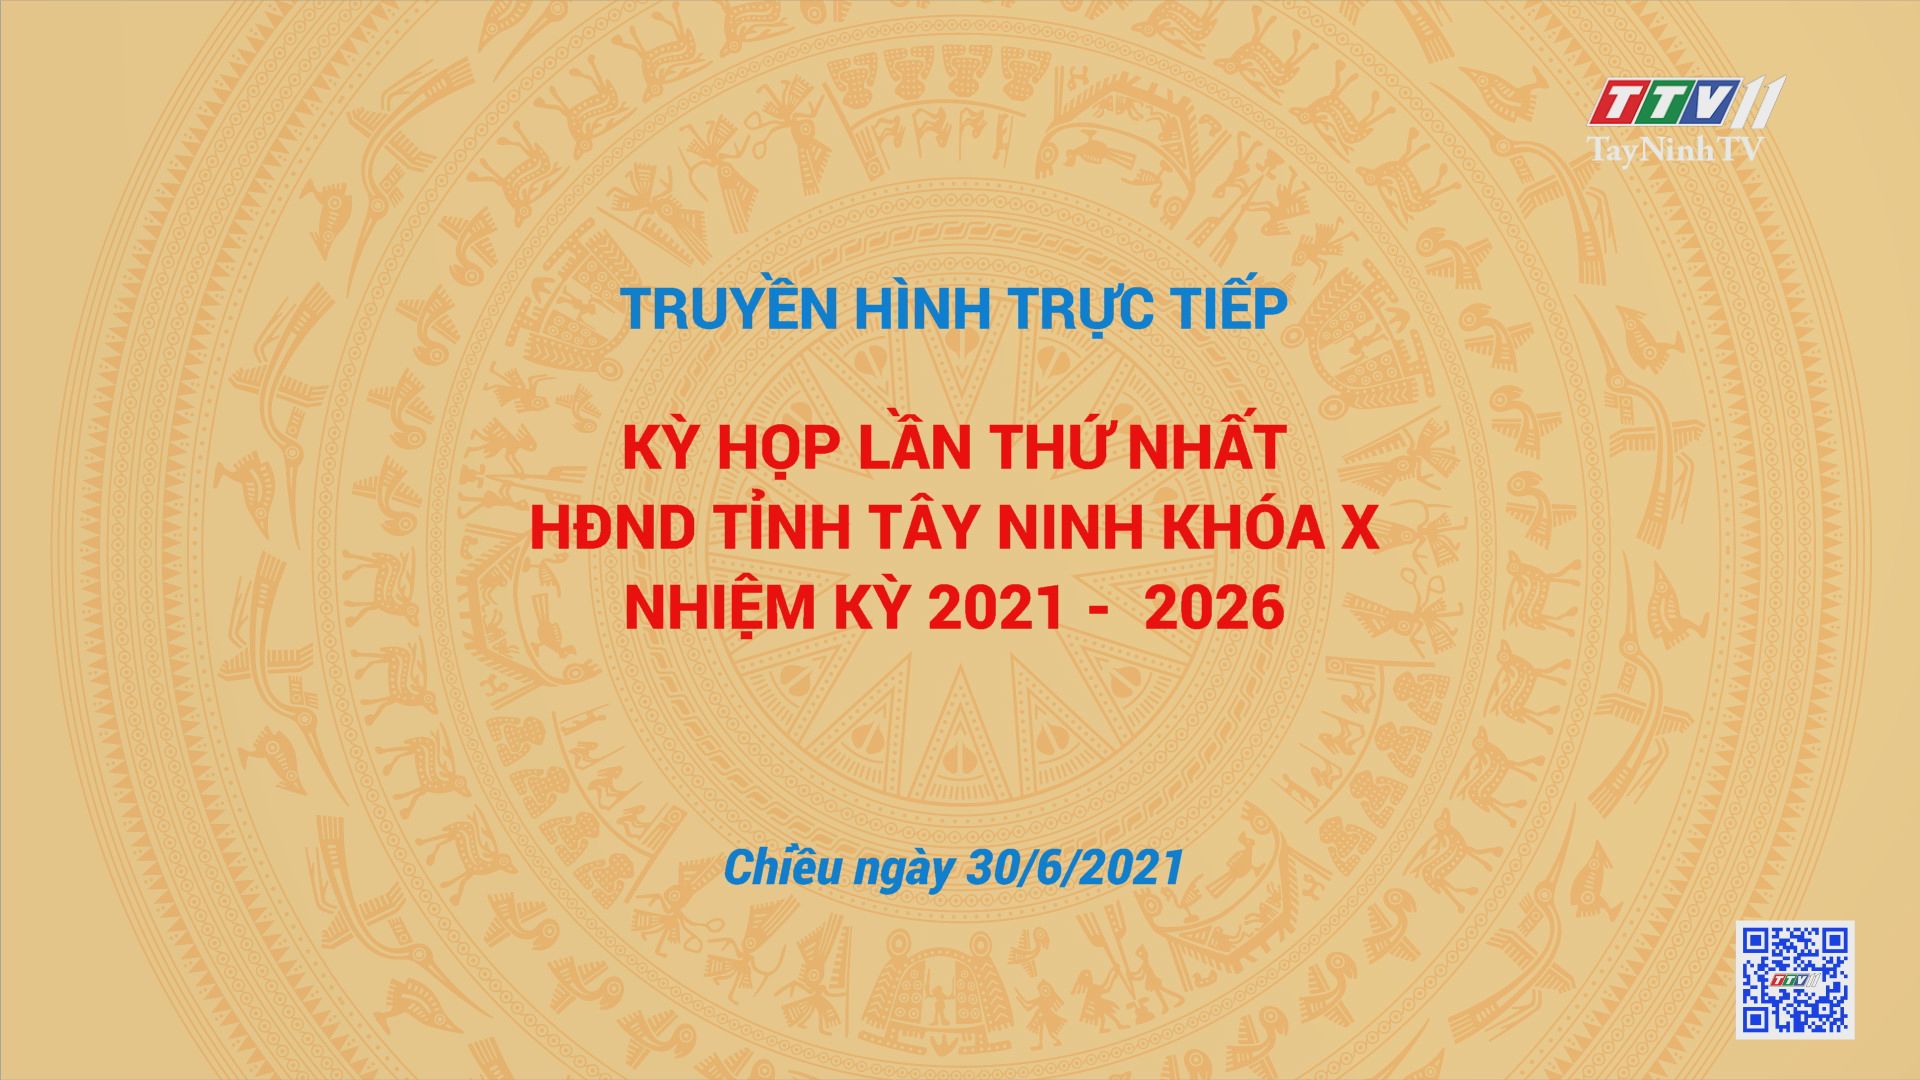 Phần 1 - Kỳ họp lần thứ nhất HĐND tỉnh Tây Ninh, khóa X, nhiệm kỳ 2021-2026 | TayNinhTV